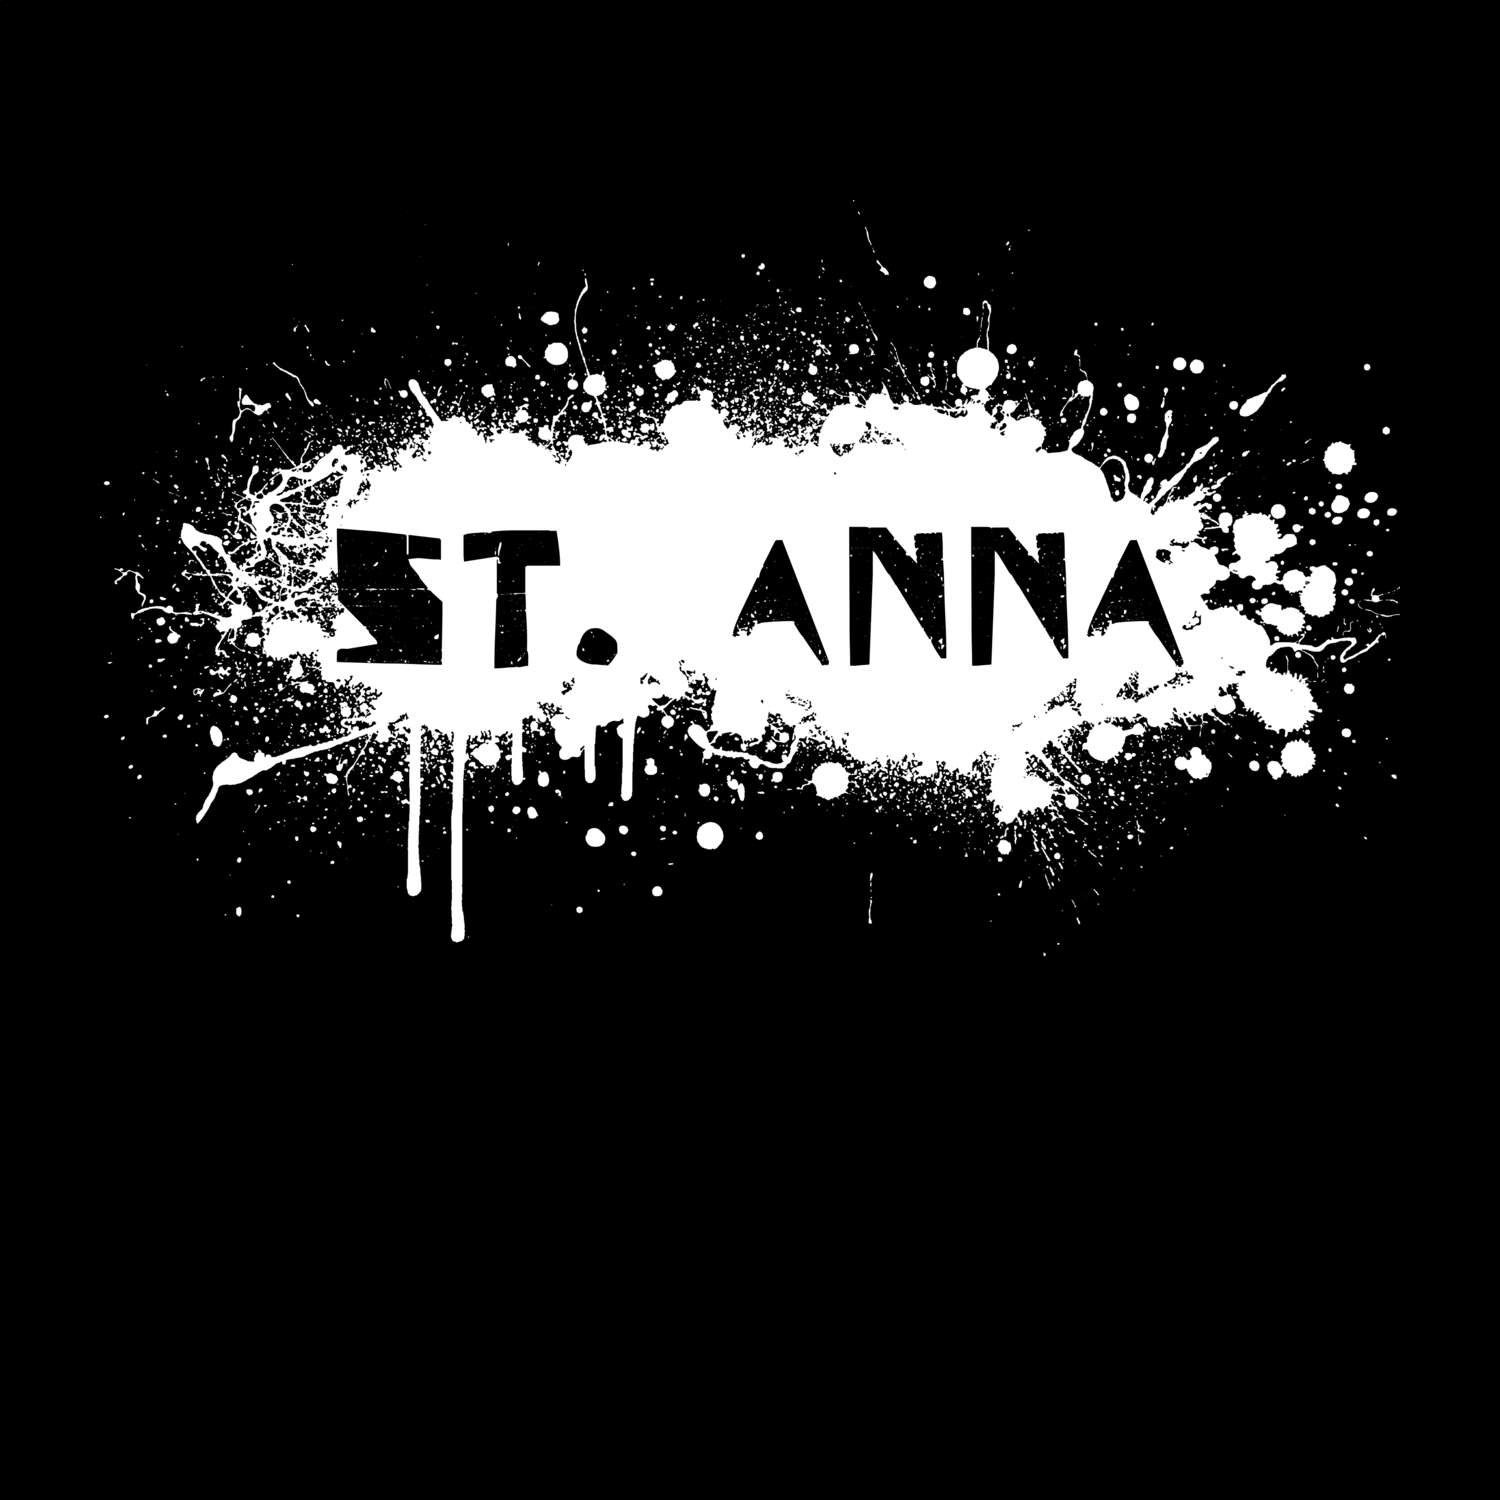 St. Anna T-Shirt »Paint Splash Punk«